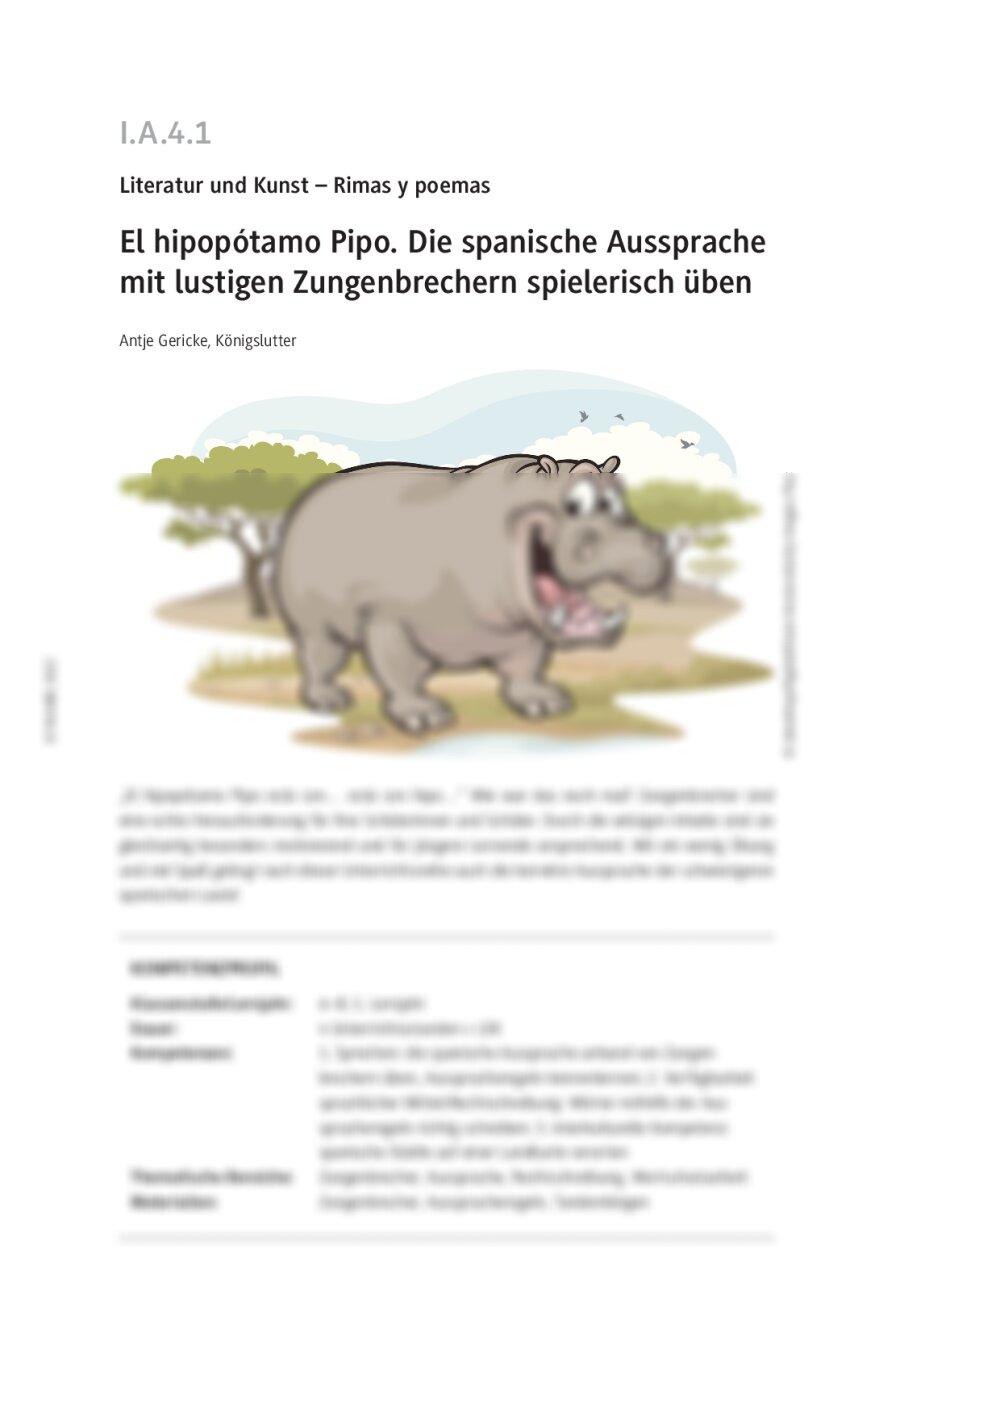 El hipopótamo Pipo - Seite 1